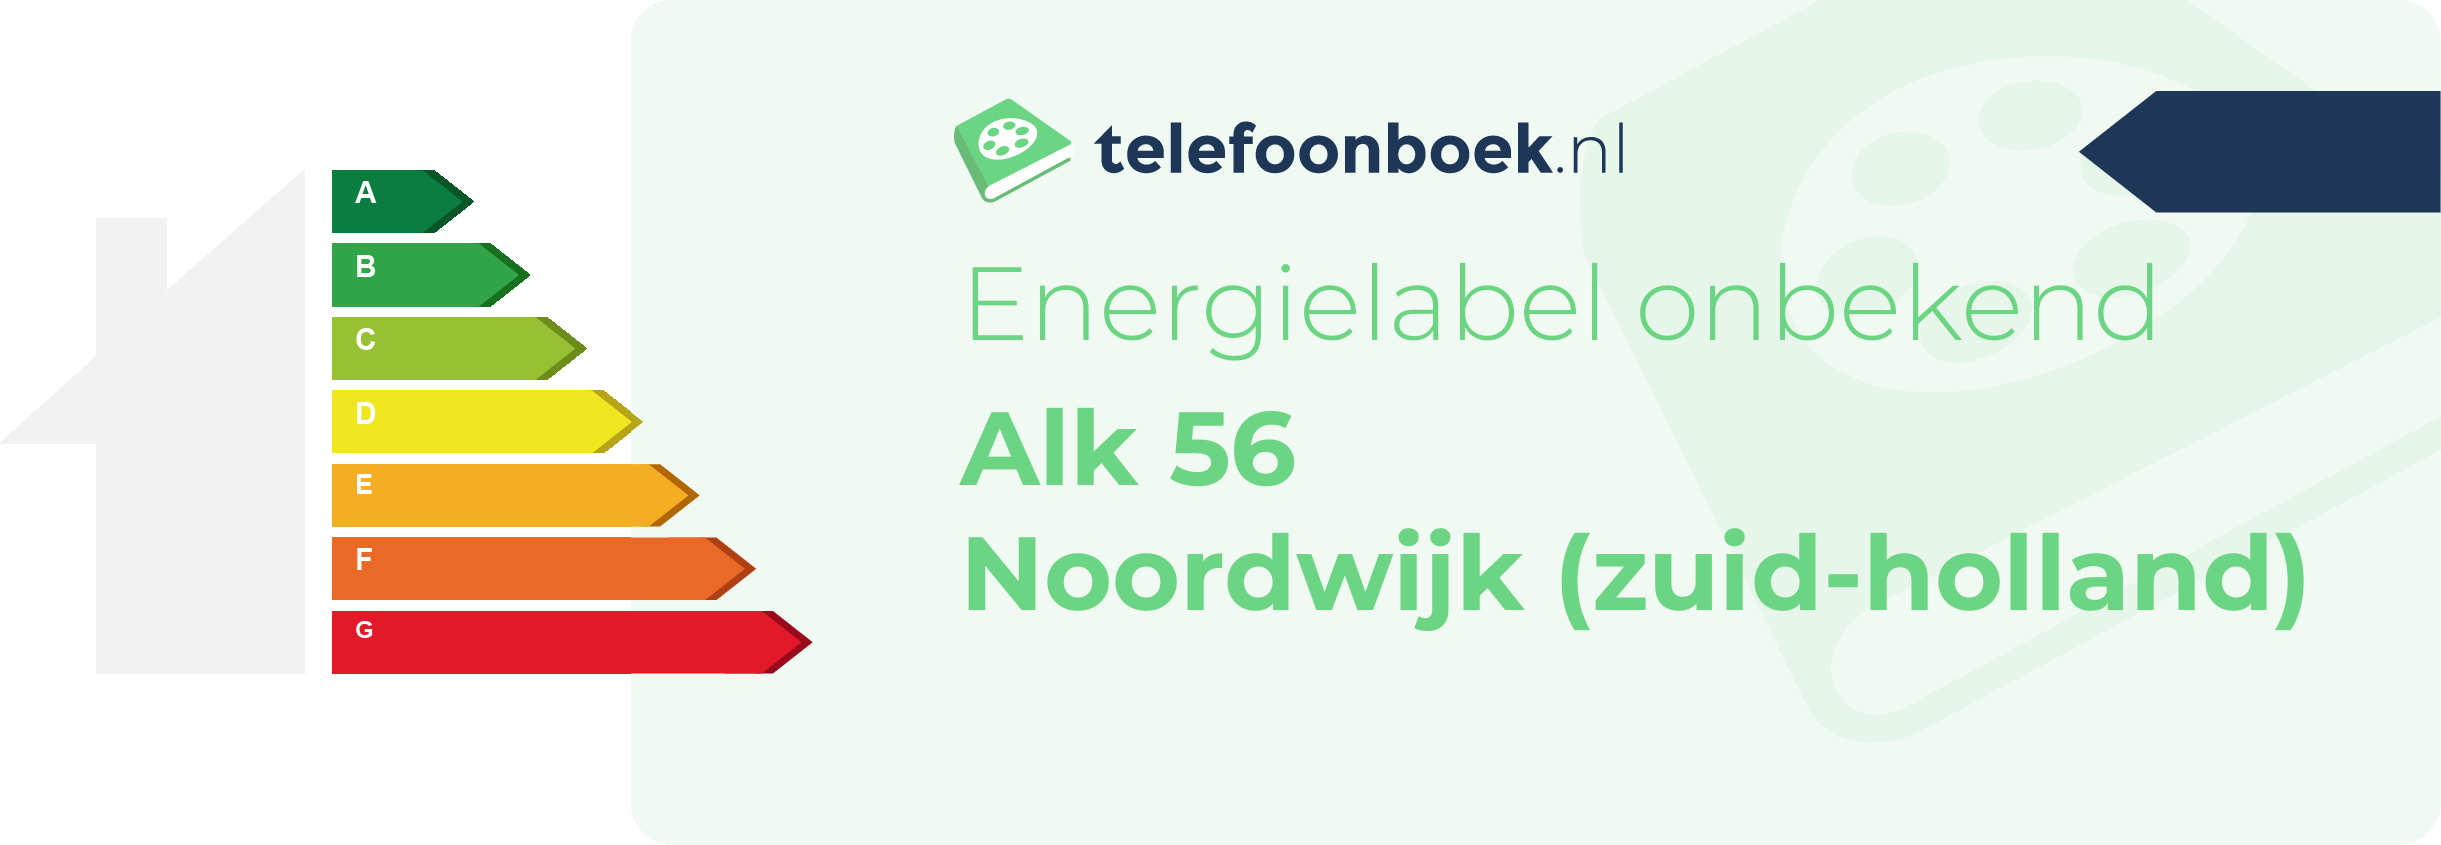 Energielabel Alk 56 Noordwijk (Zuid-Holland)